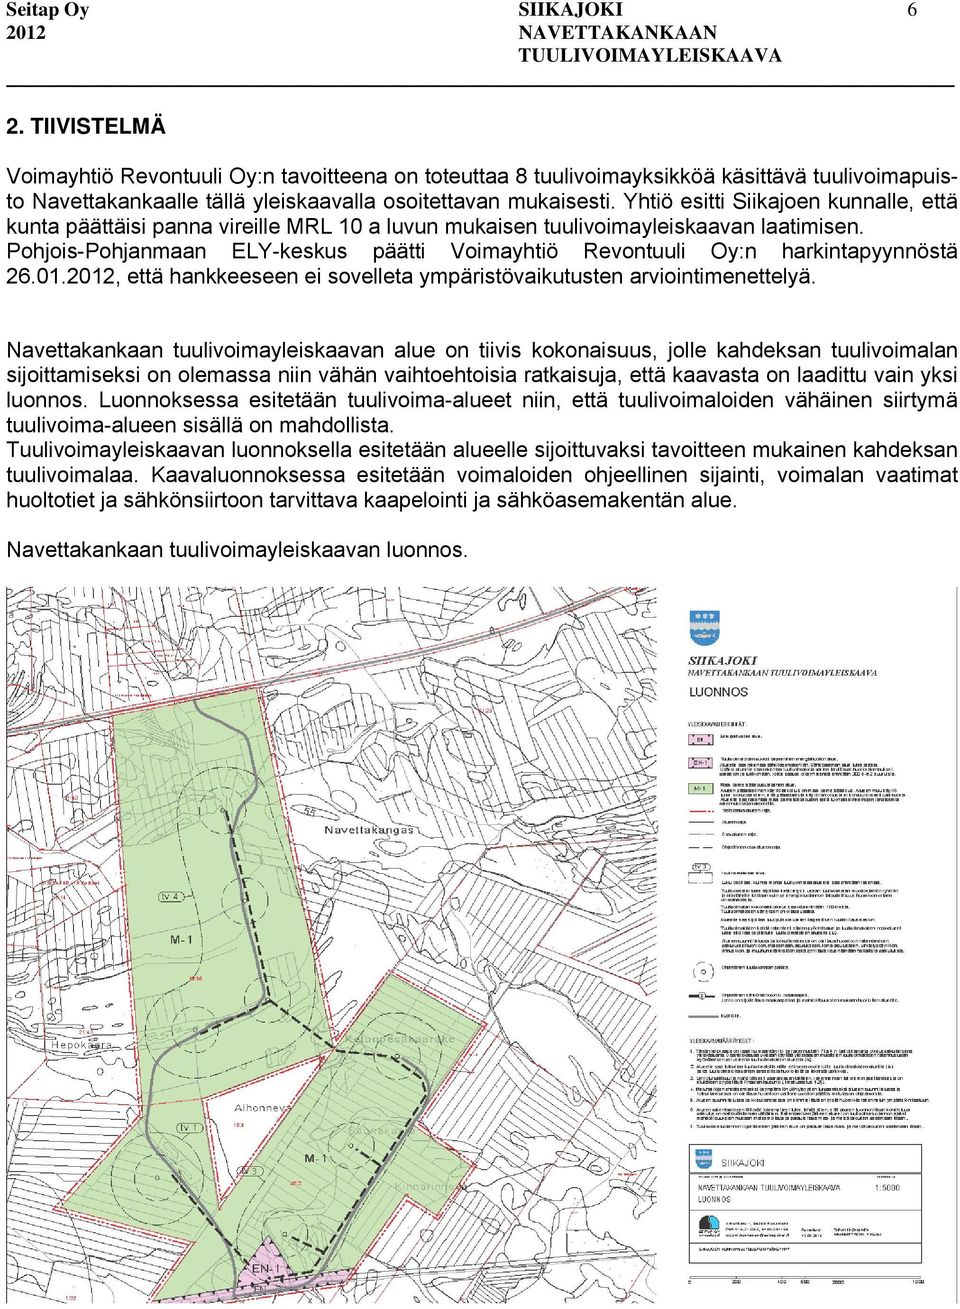 Pohjois-Pohjanmaan ELY-keskus päätti Voimayhtiö Revontuuli Oy:n harkintapyynnöstä 26.01.2012, että hankkeeseen ei sovelleta ympäristövaikutusten arviointimenettelyä.